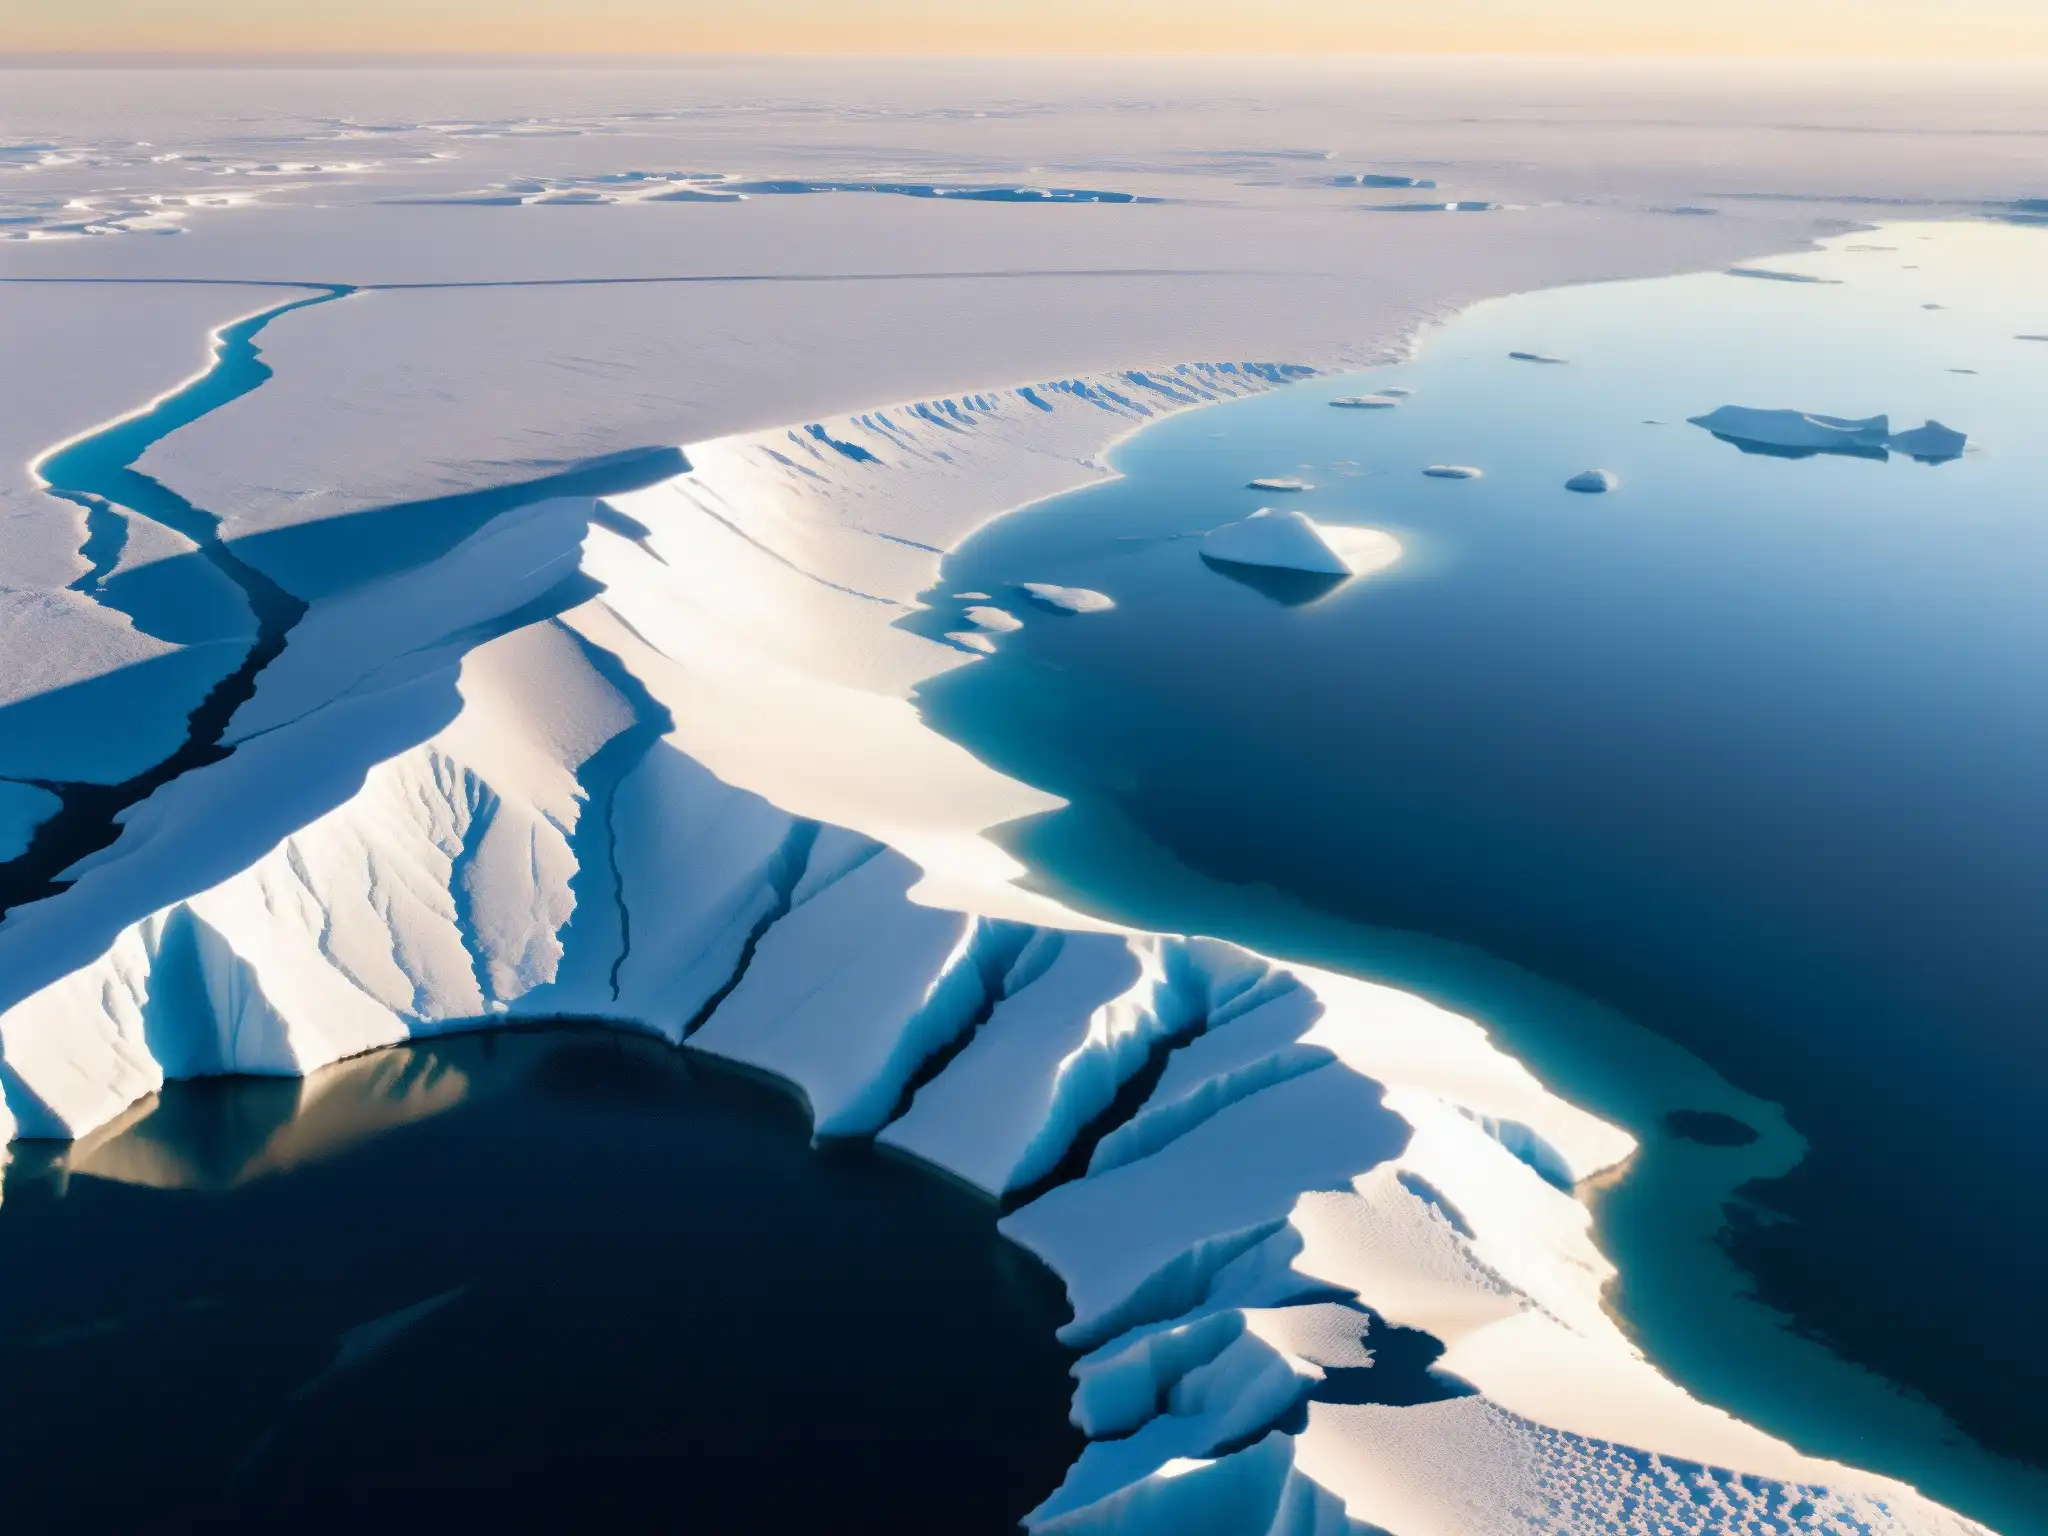 Vista panorámica de un casquete polar con grietas y fisuras en el hielo, reflejando la luz del sol con colores y texturas deslumbrantes